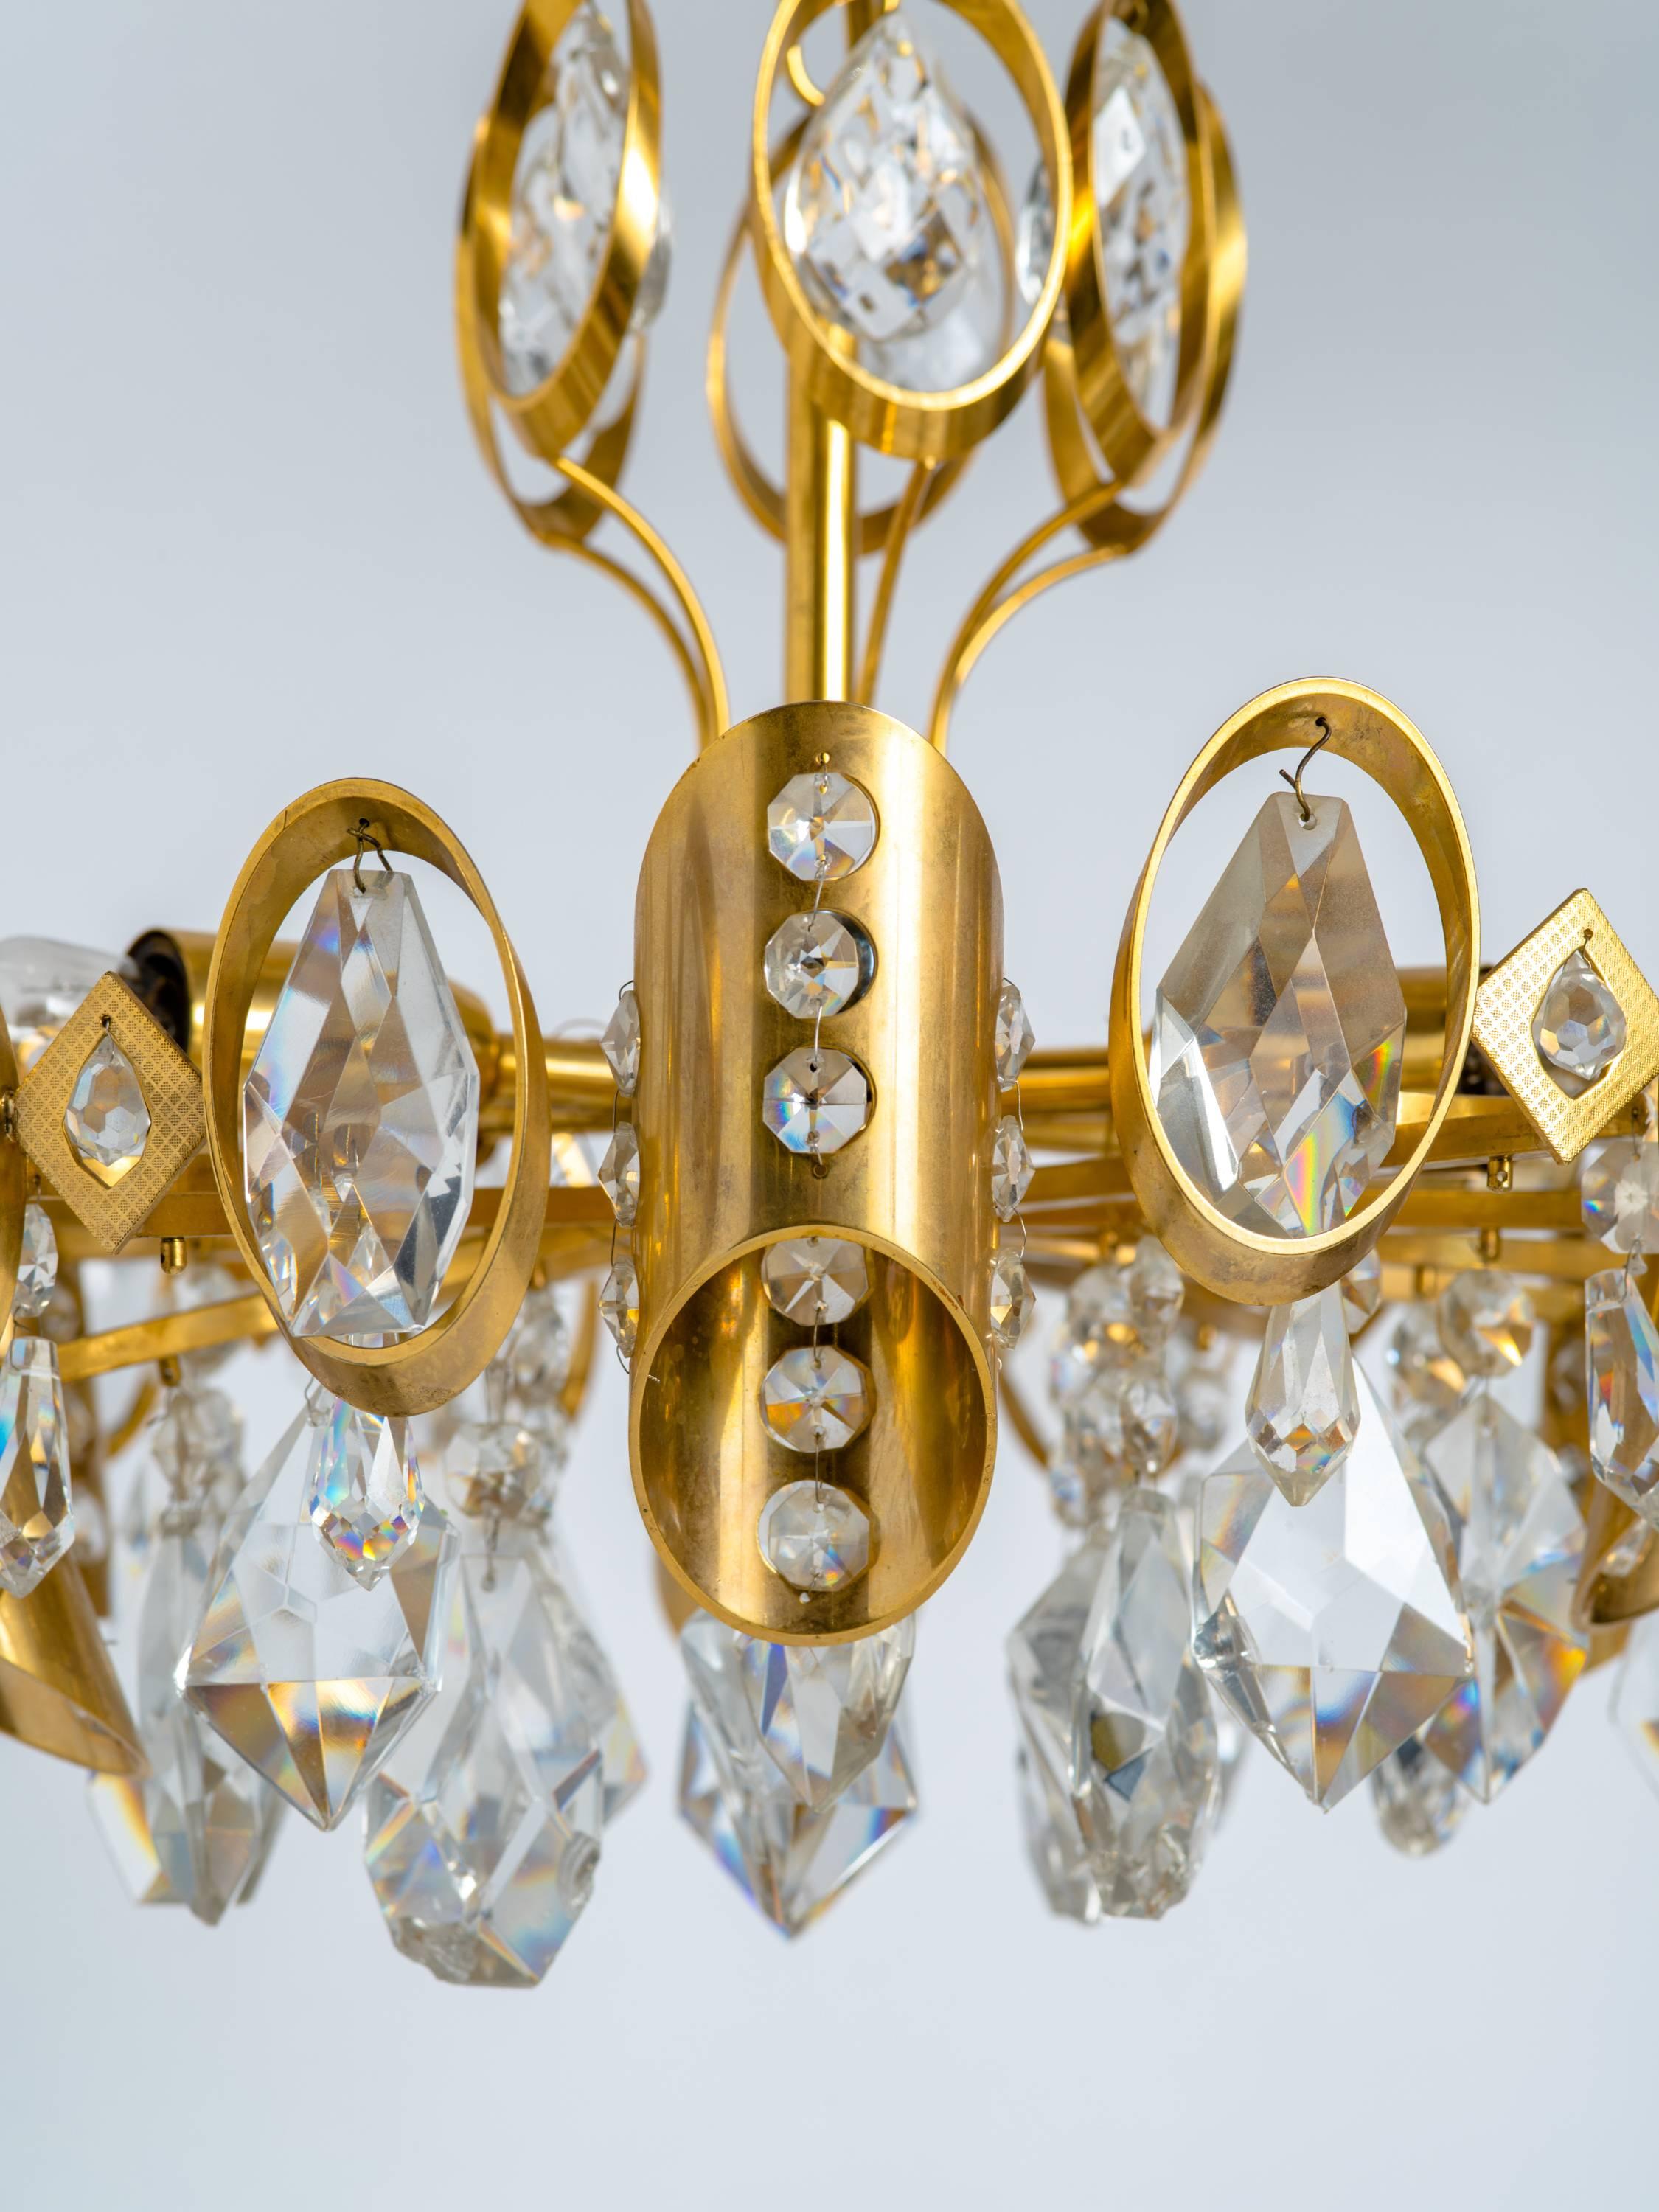 Superbe lustre moderne du milieu du siècle avec une structure en laiton doré et des pendentifs en cristal taillé. Conception à plusieurs niveaux équipée de six lumières radiales et de cylindres asymétriques avec des accents en cristal perlé.